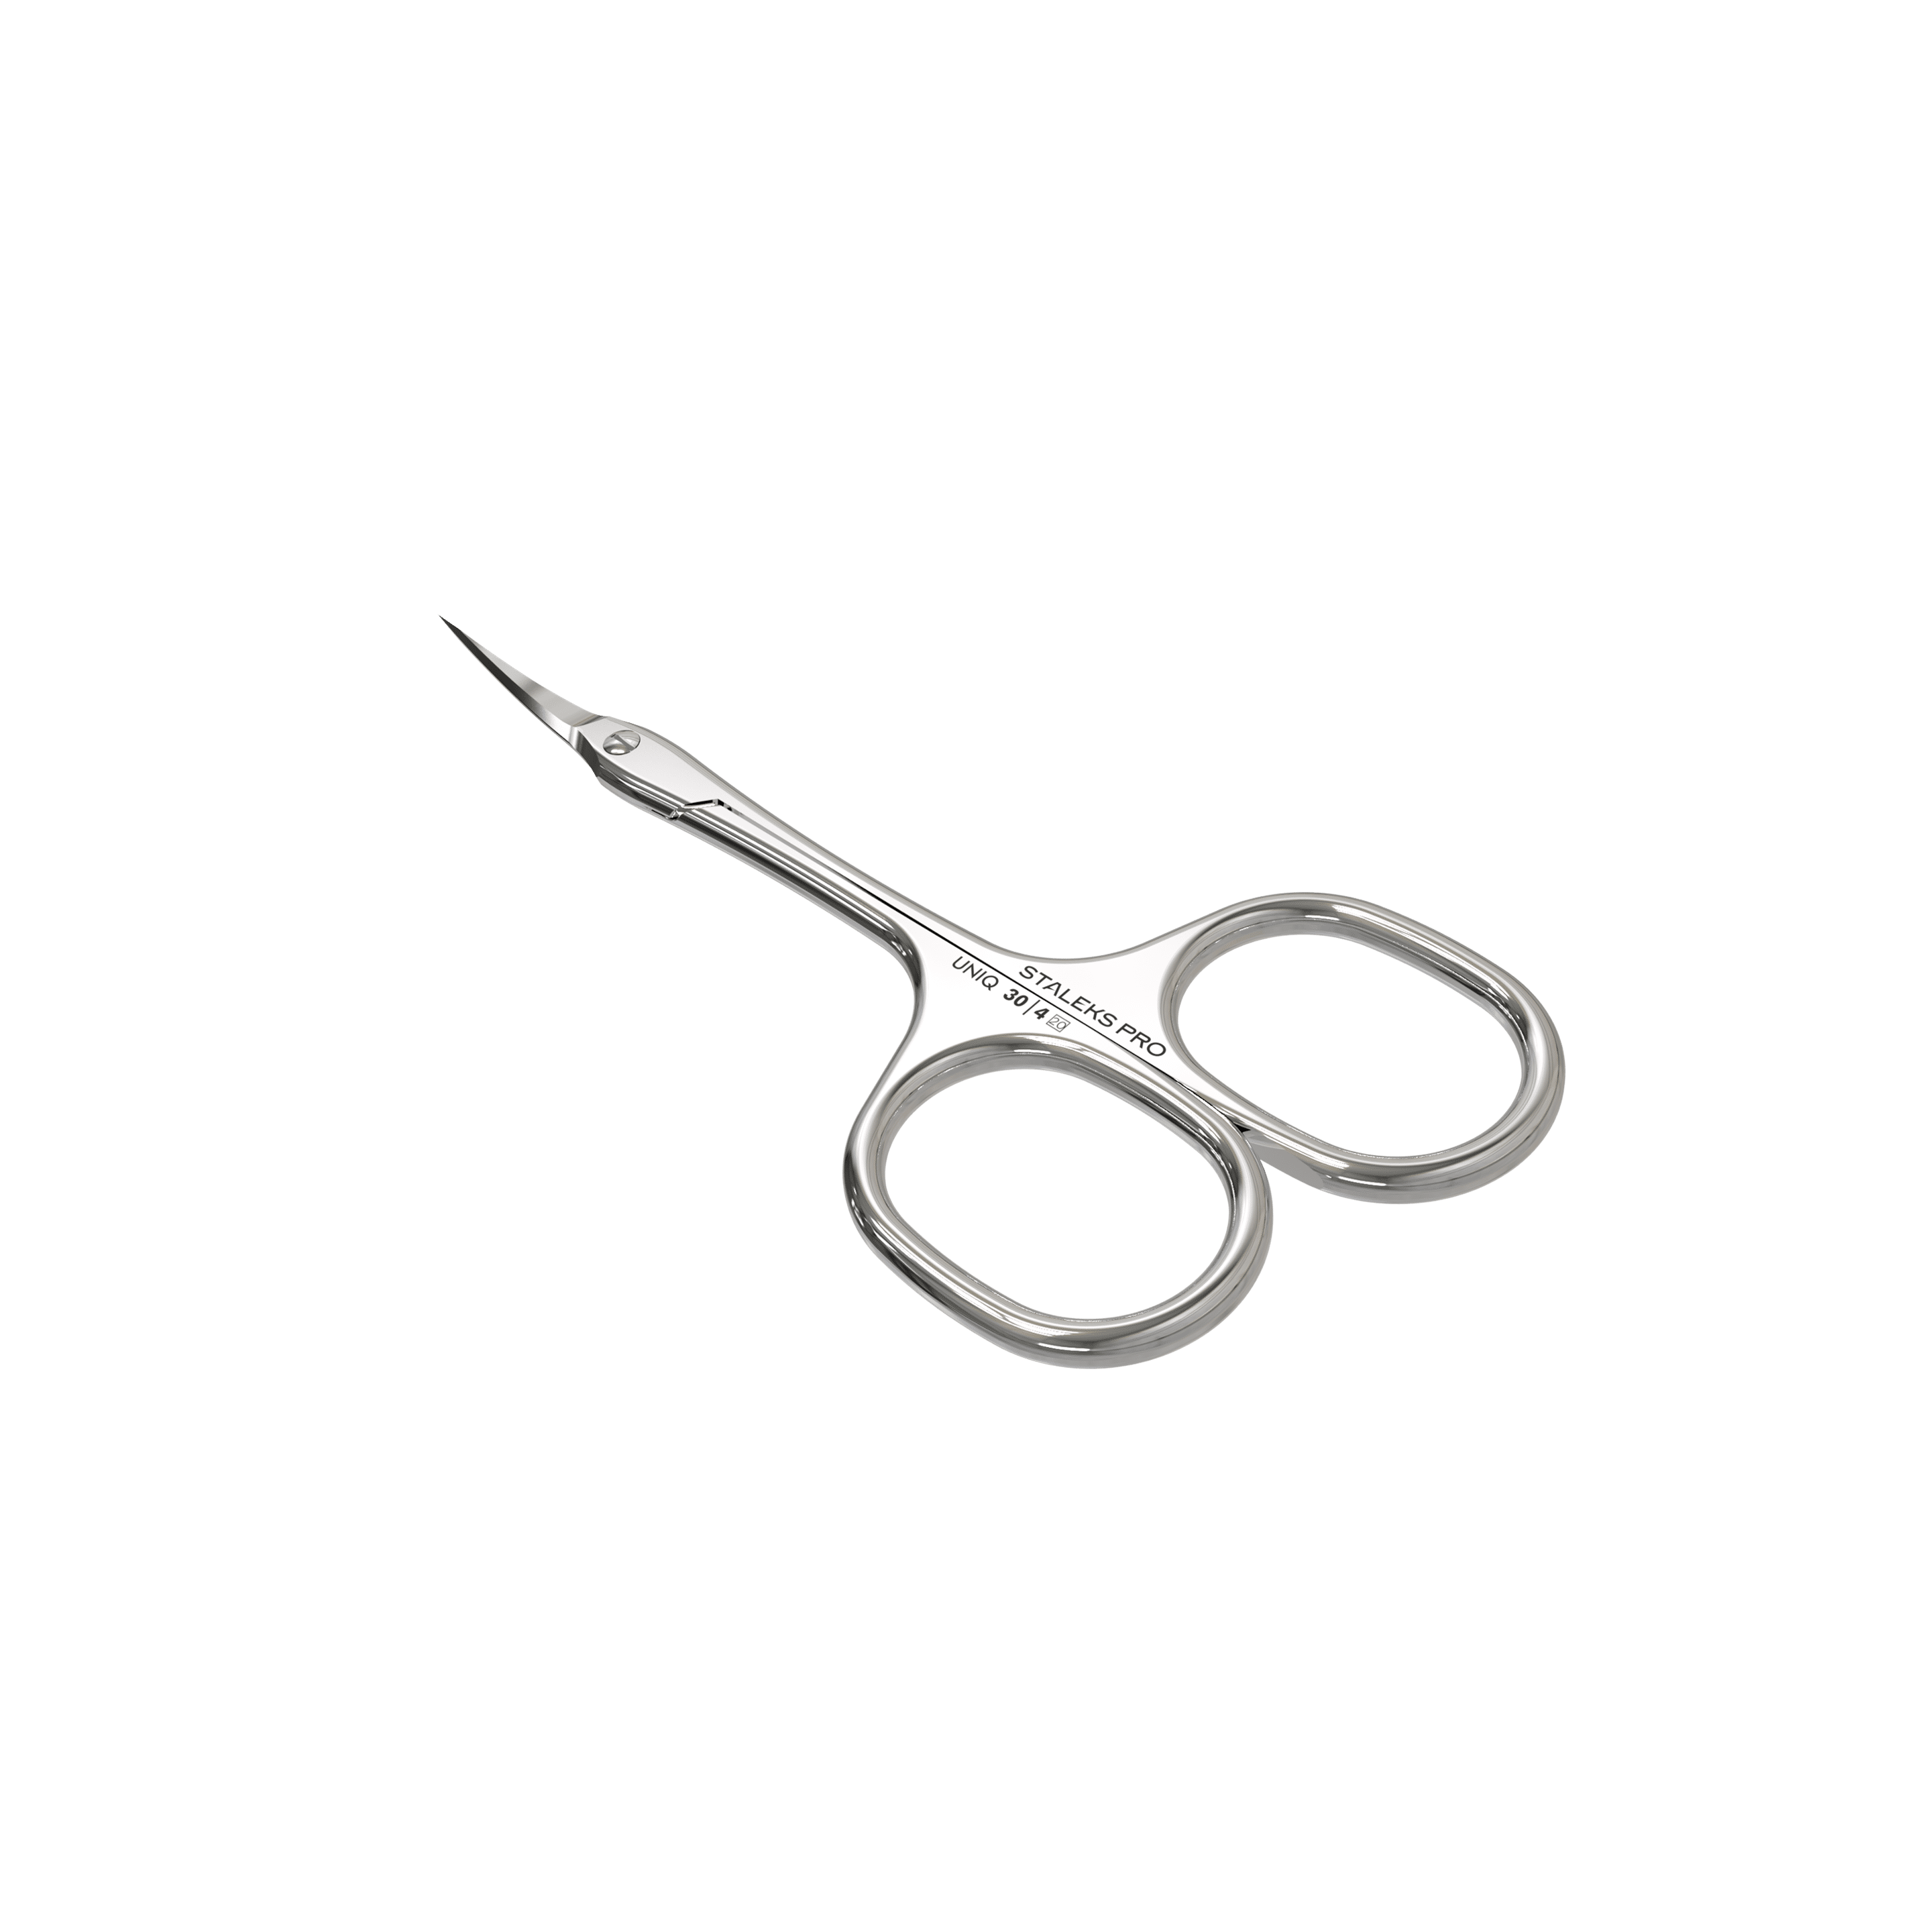 Professional scissors SQ-30/4